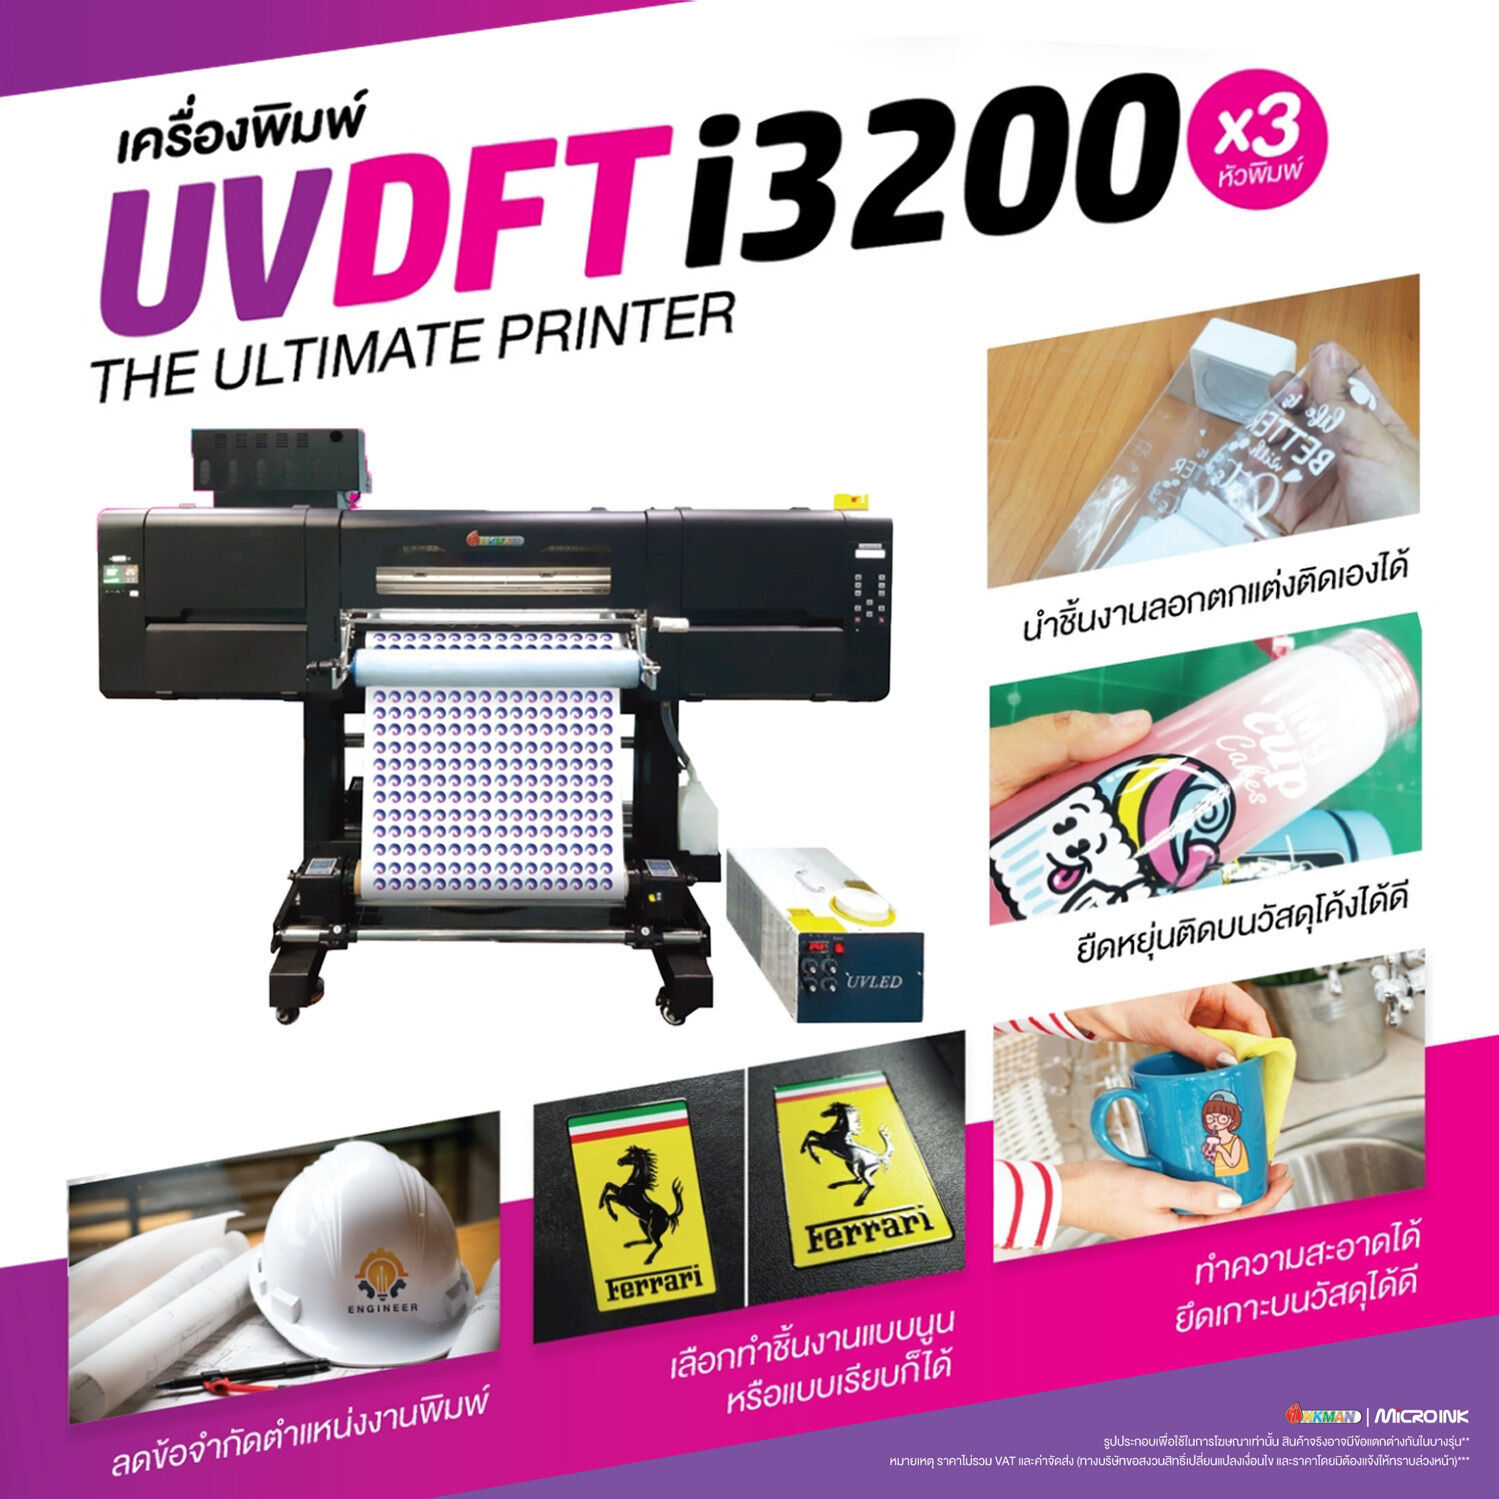 เครื่องพิมพ์ UV DFT i3200 3 หัวพิมพ์ ระบบพิมพ์ฟิล์ม AB ขั้นเทพ เหมาะมากสำหรับติดลงวัสดุได้เกือบทุกชนิดและลดปัญหาตำแหล่งในการติดของชิ้นงานได้ดีเยียม